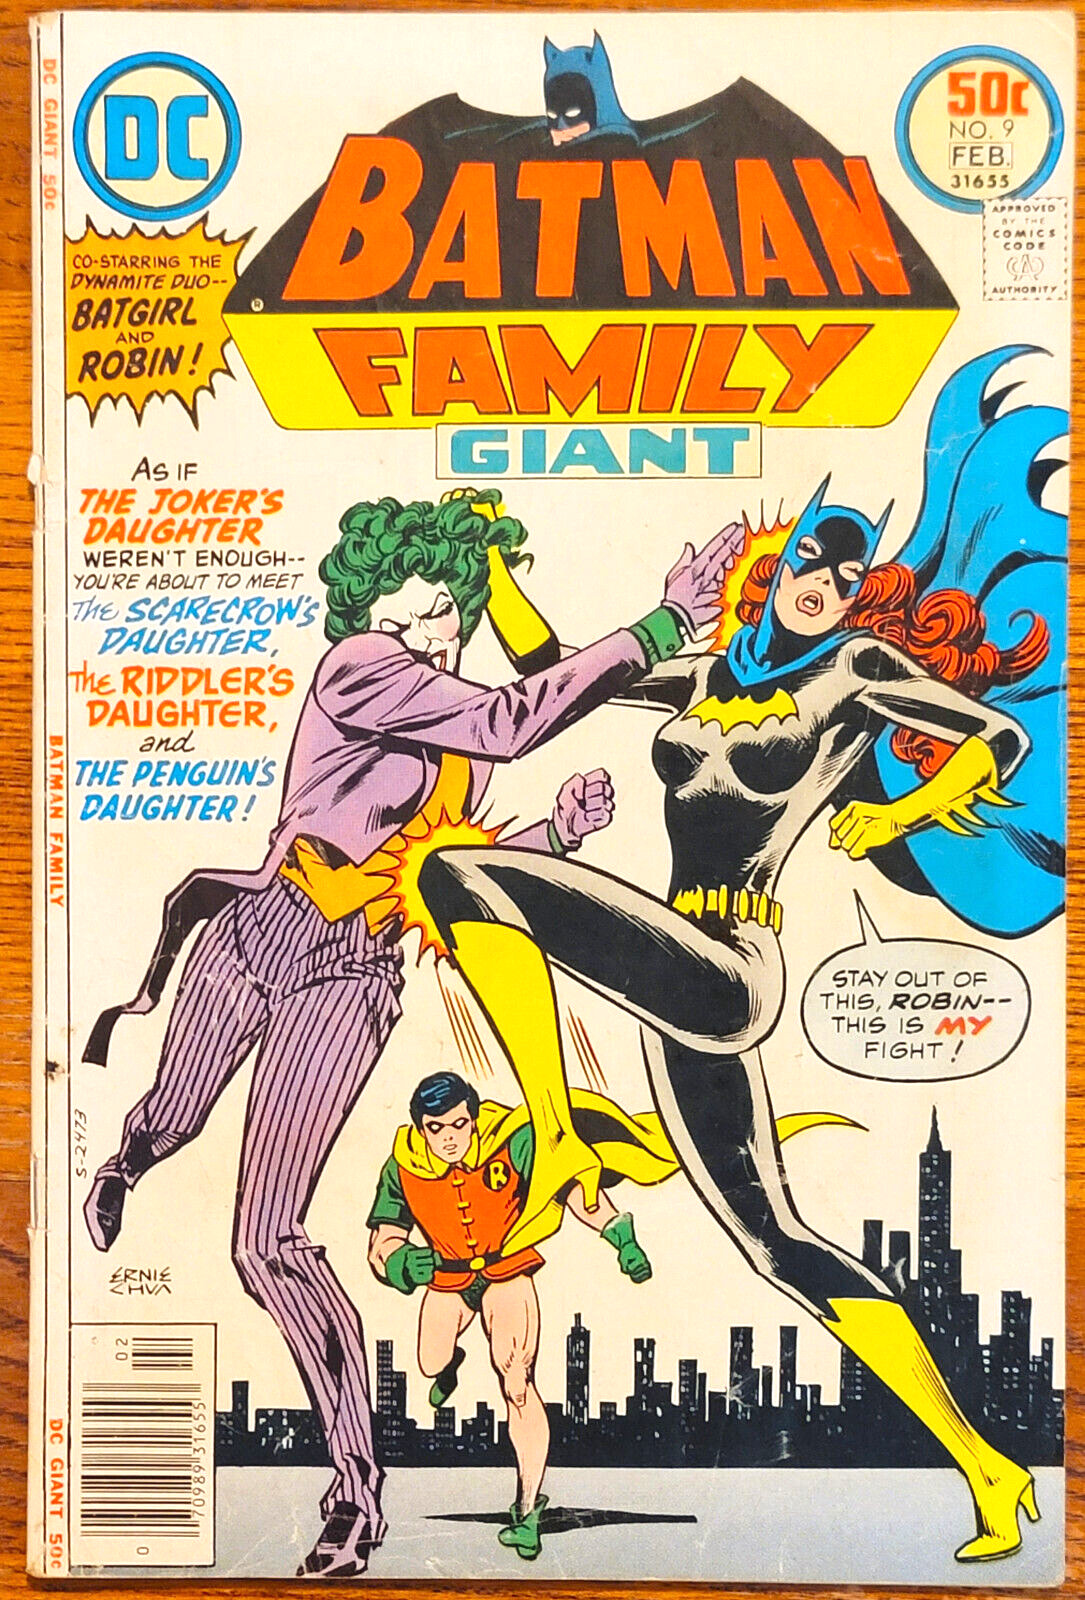 BATMAN FAMILY #9 (DC: 1977) Batgirl vs. Joker, Penguin Scarecrow Daughter VG+